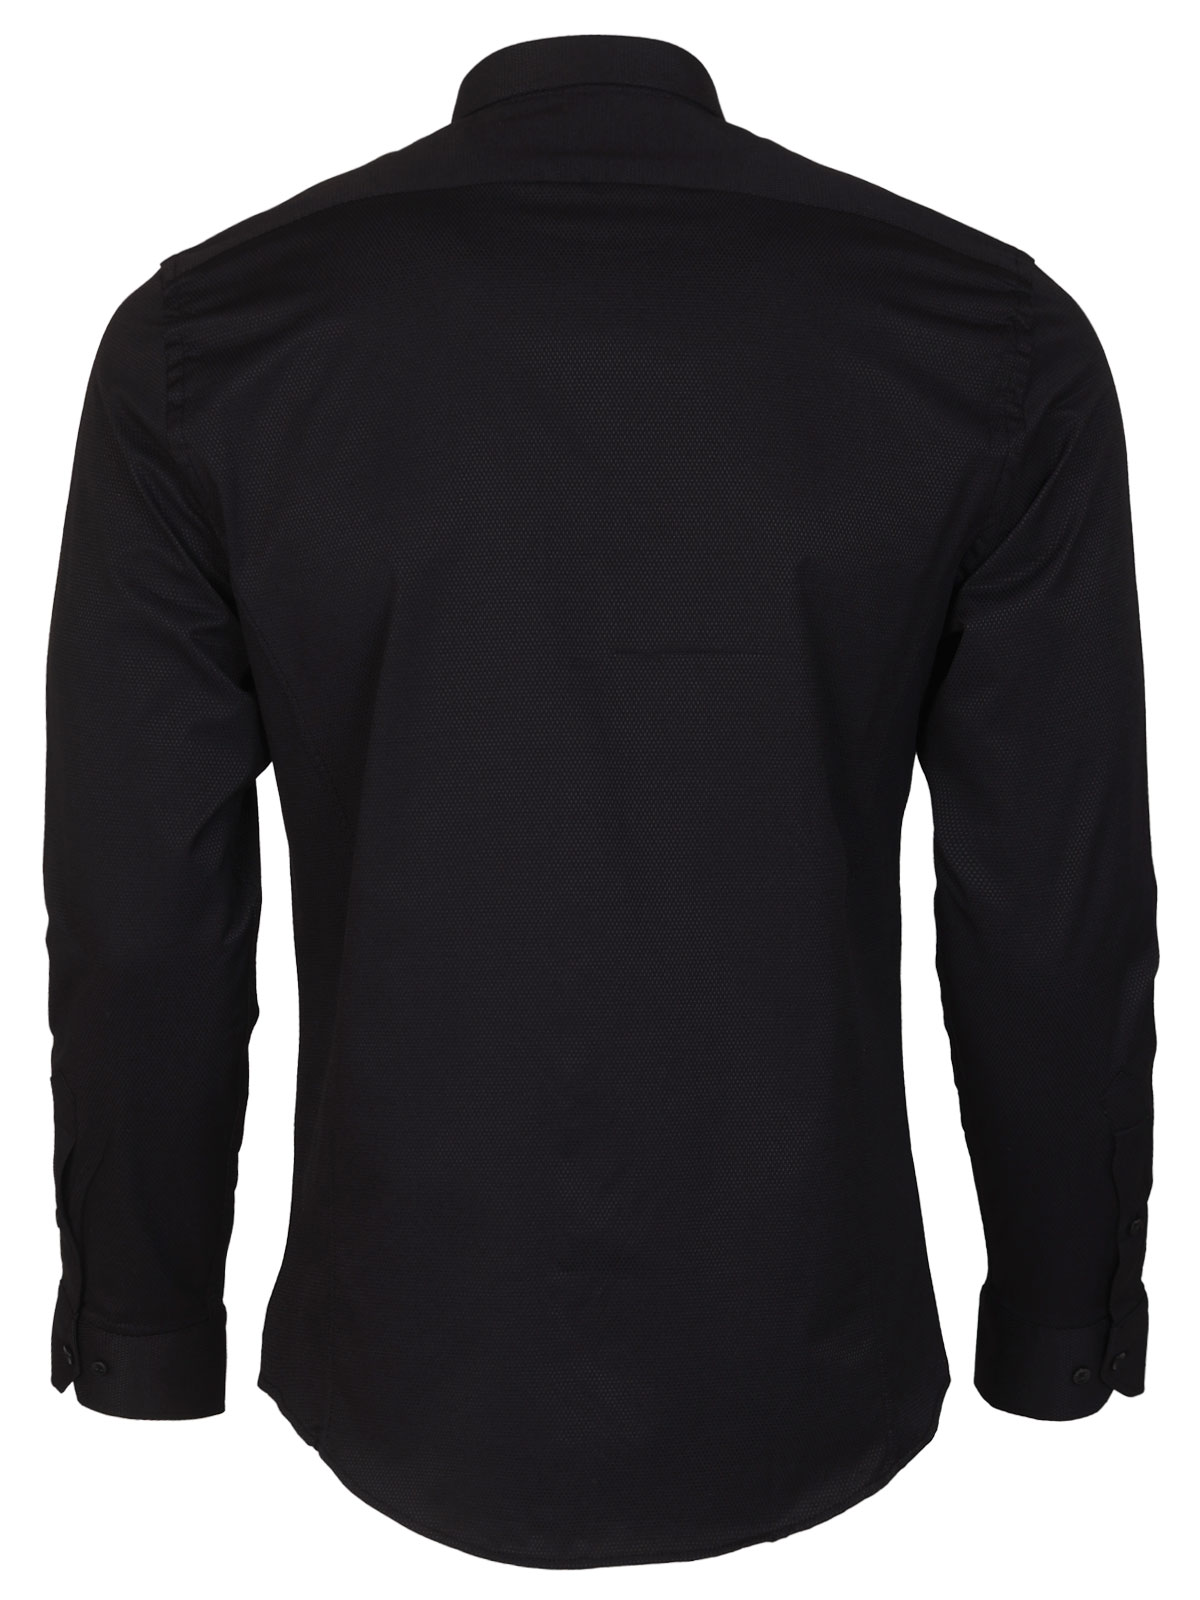 Ανδρικό πουκάμισο σε μαύρο χρώμα - 21609 € 48.37 img2